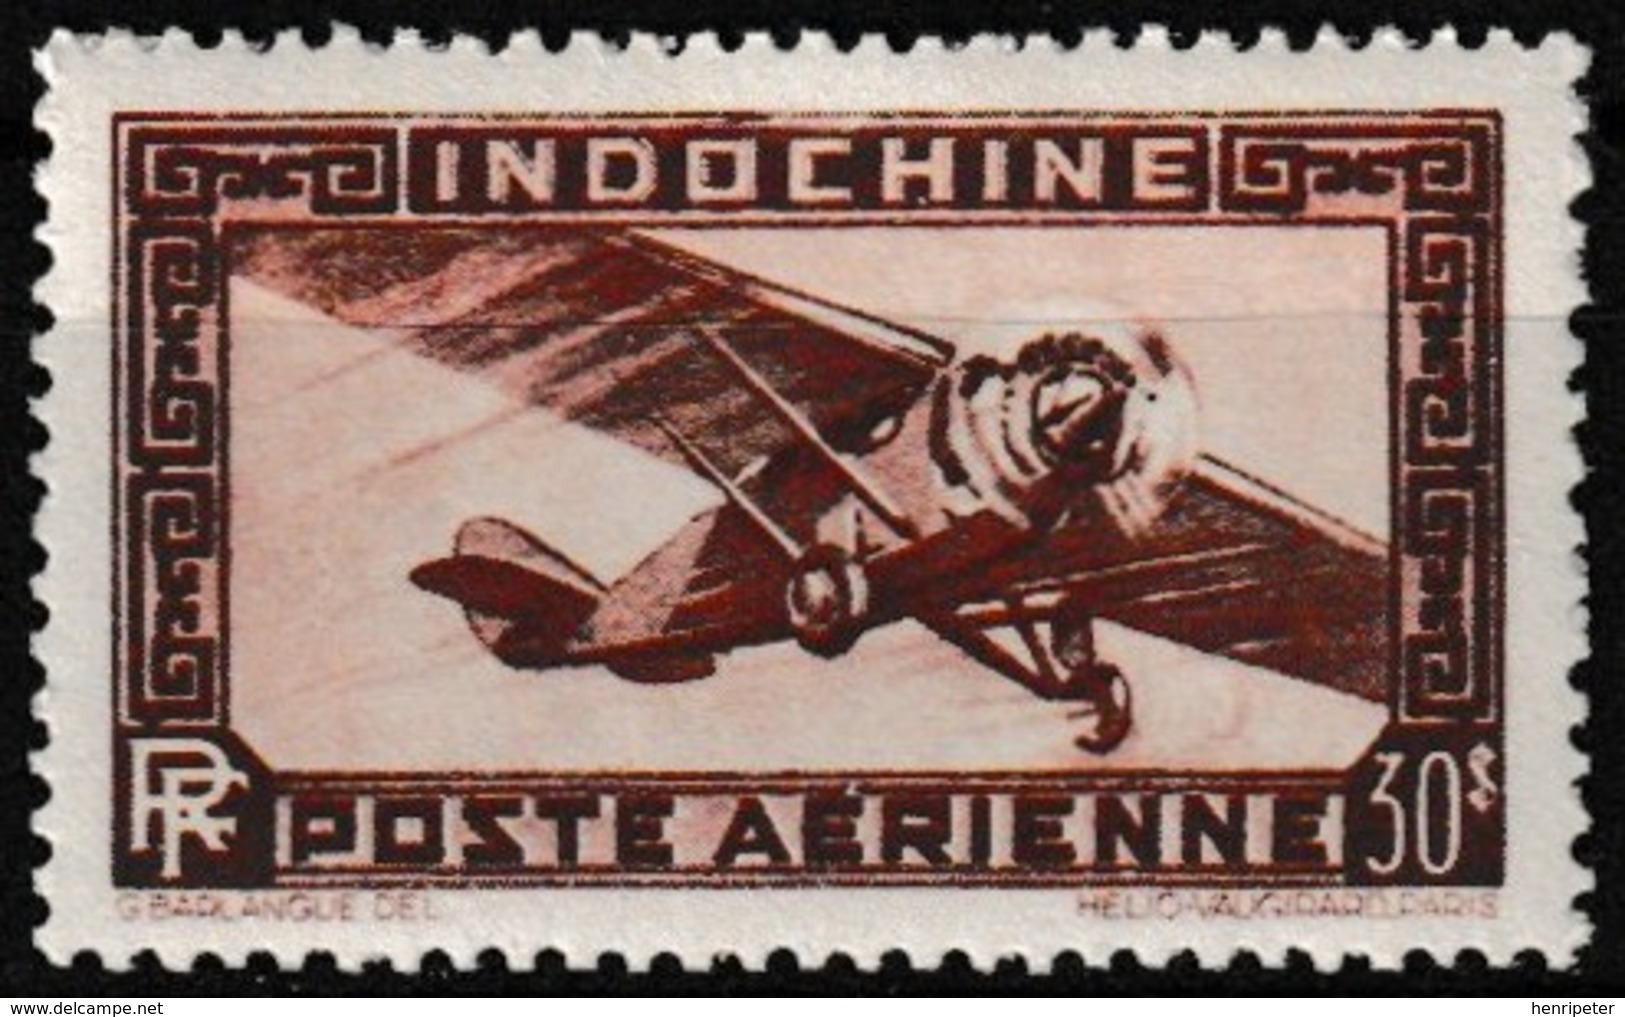 Timbre Aérien Gommé Neuf** - Avion Monomoteur Single-engine Airplane - N° 47 (Yvert) - Indochine 1949 - Poste Aérienne